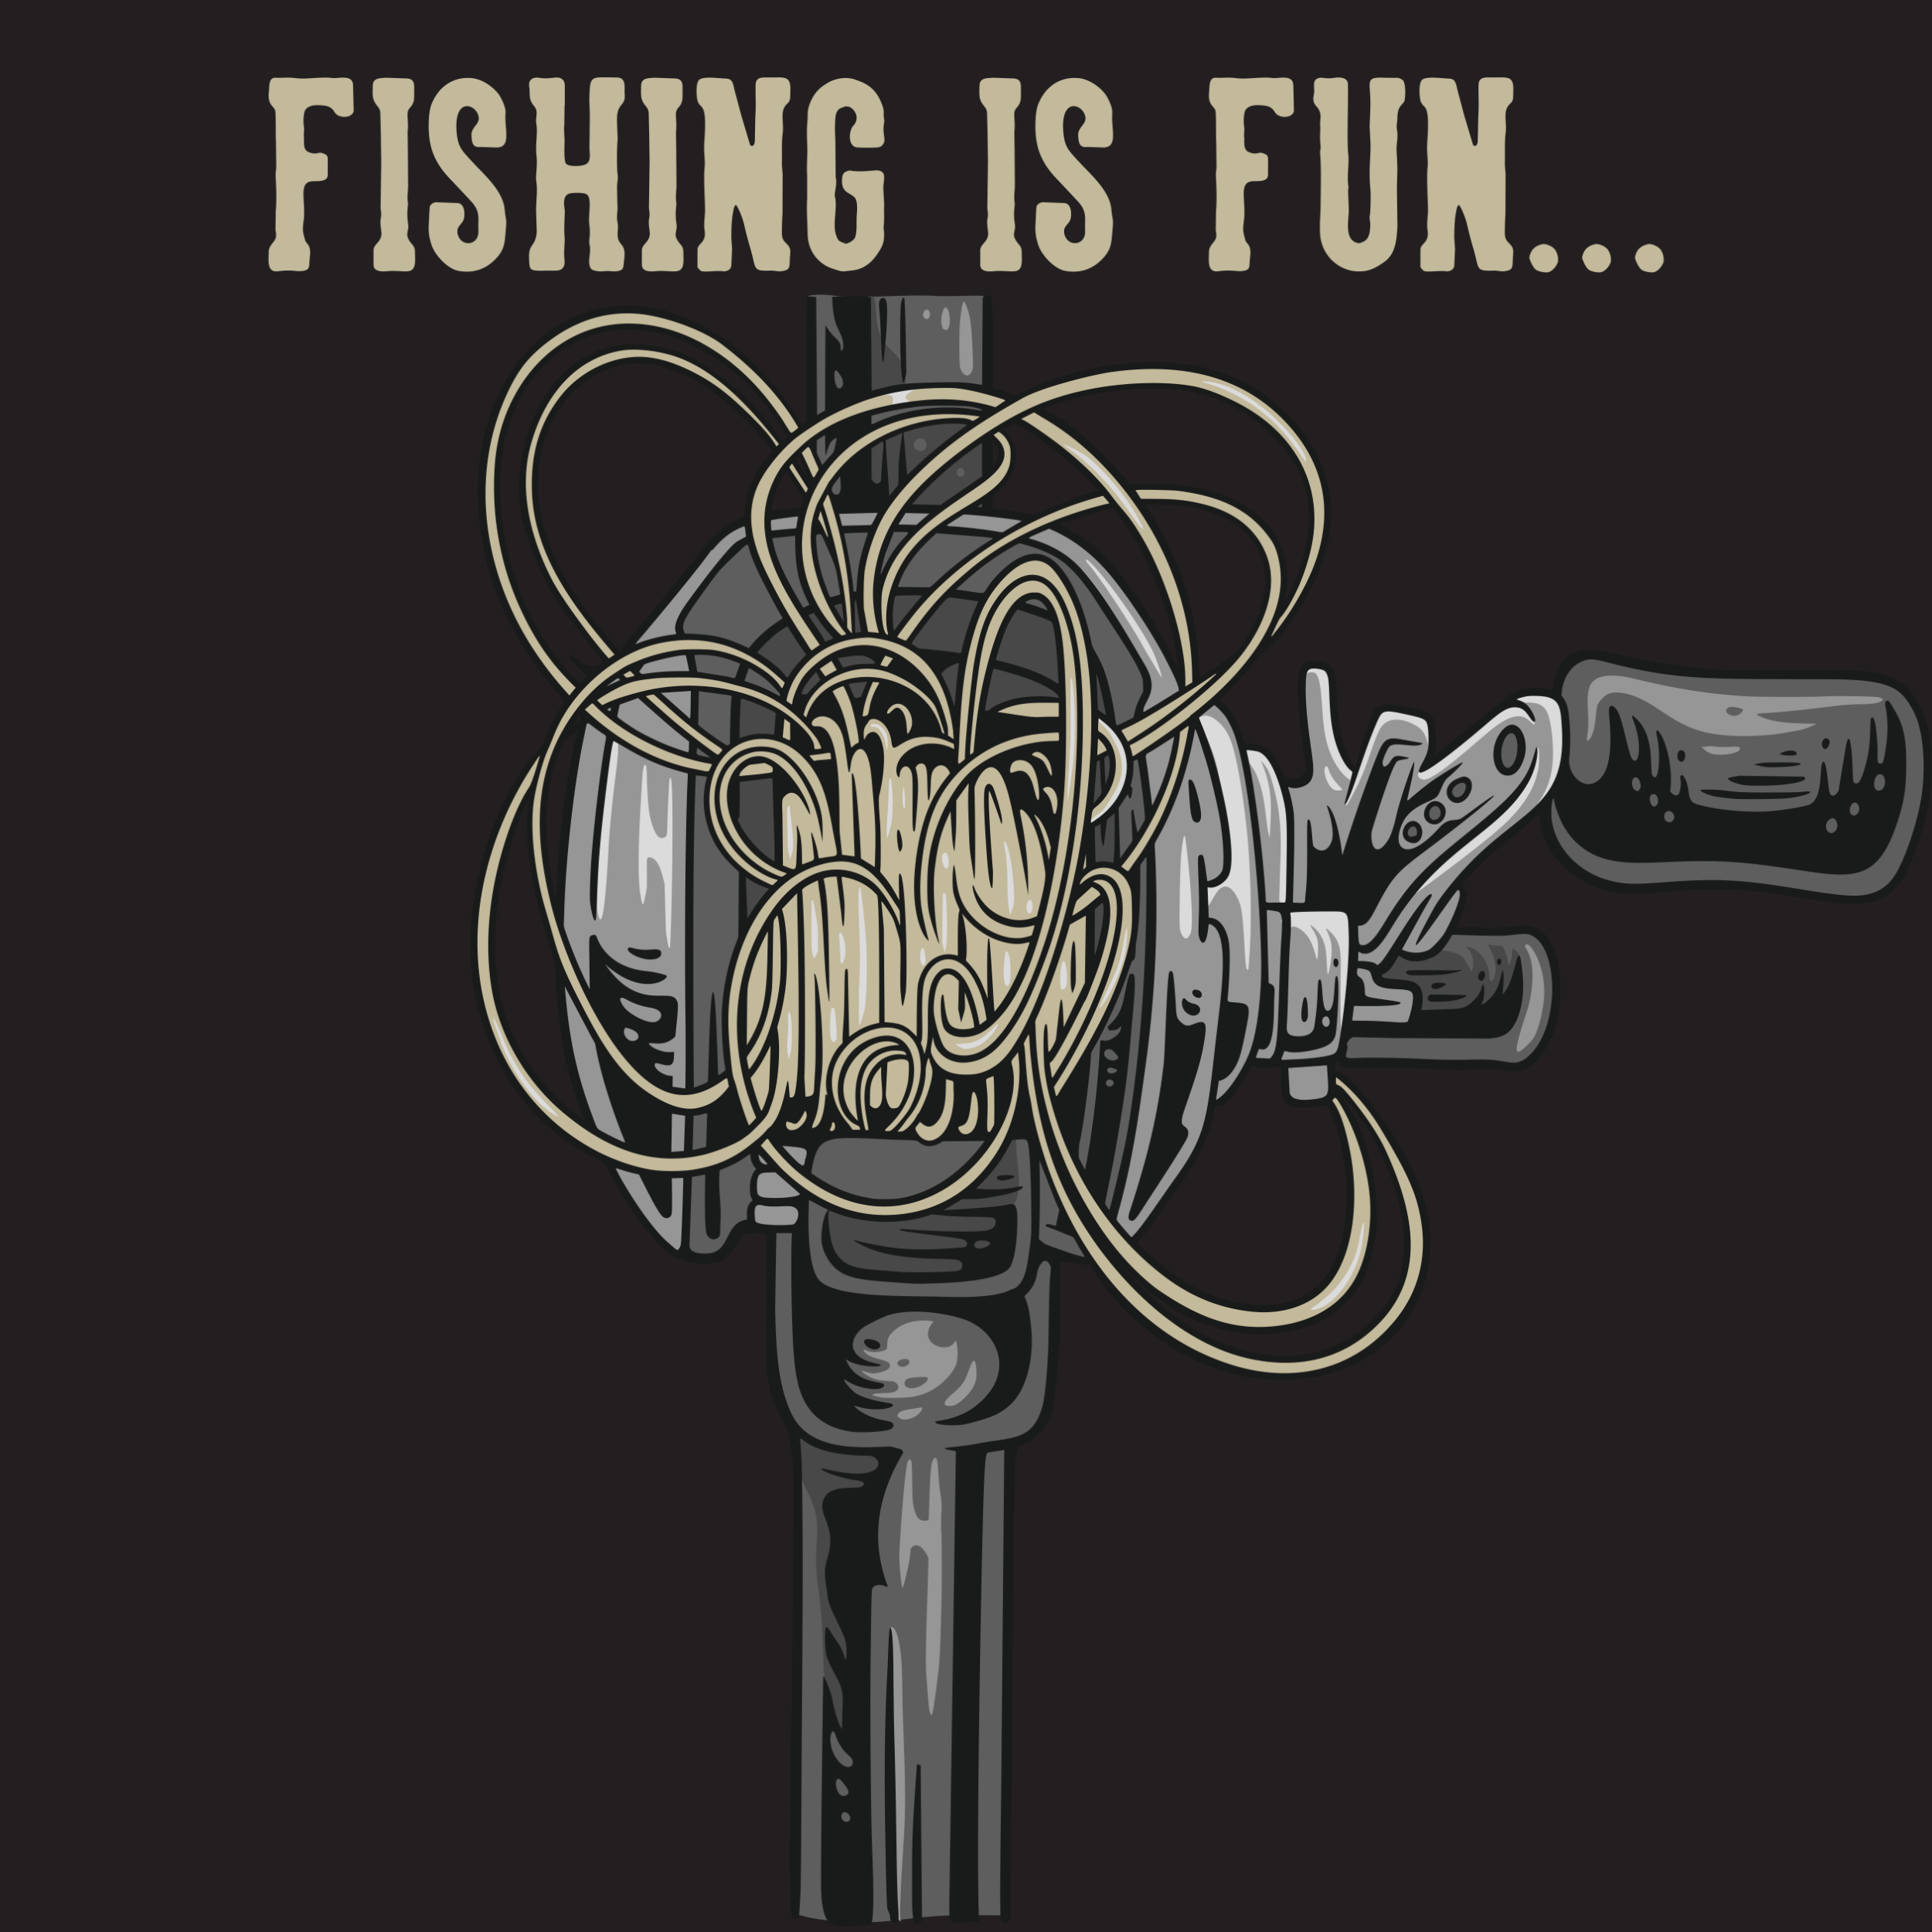 Wishing I Was Fishing T Shirt Funny Fishing Humor Country Tee Shirt up to 5X